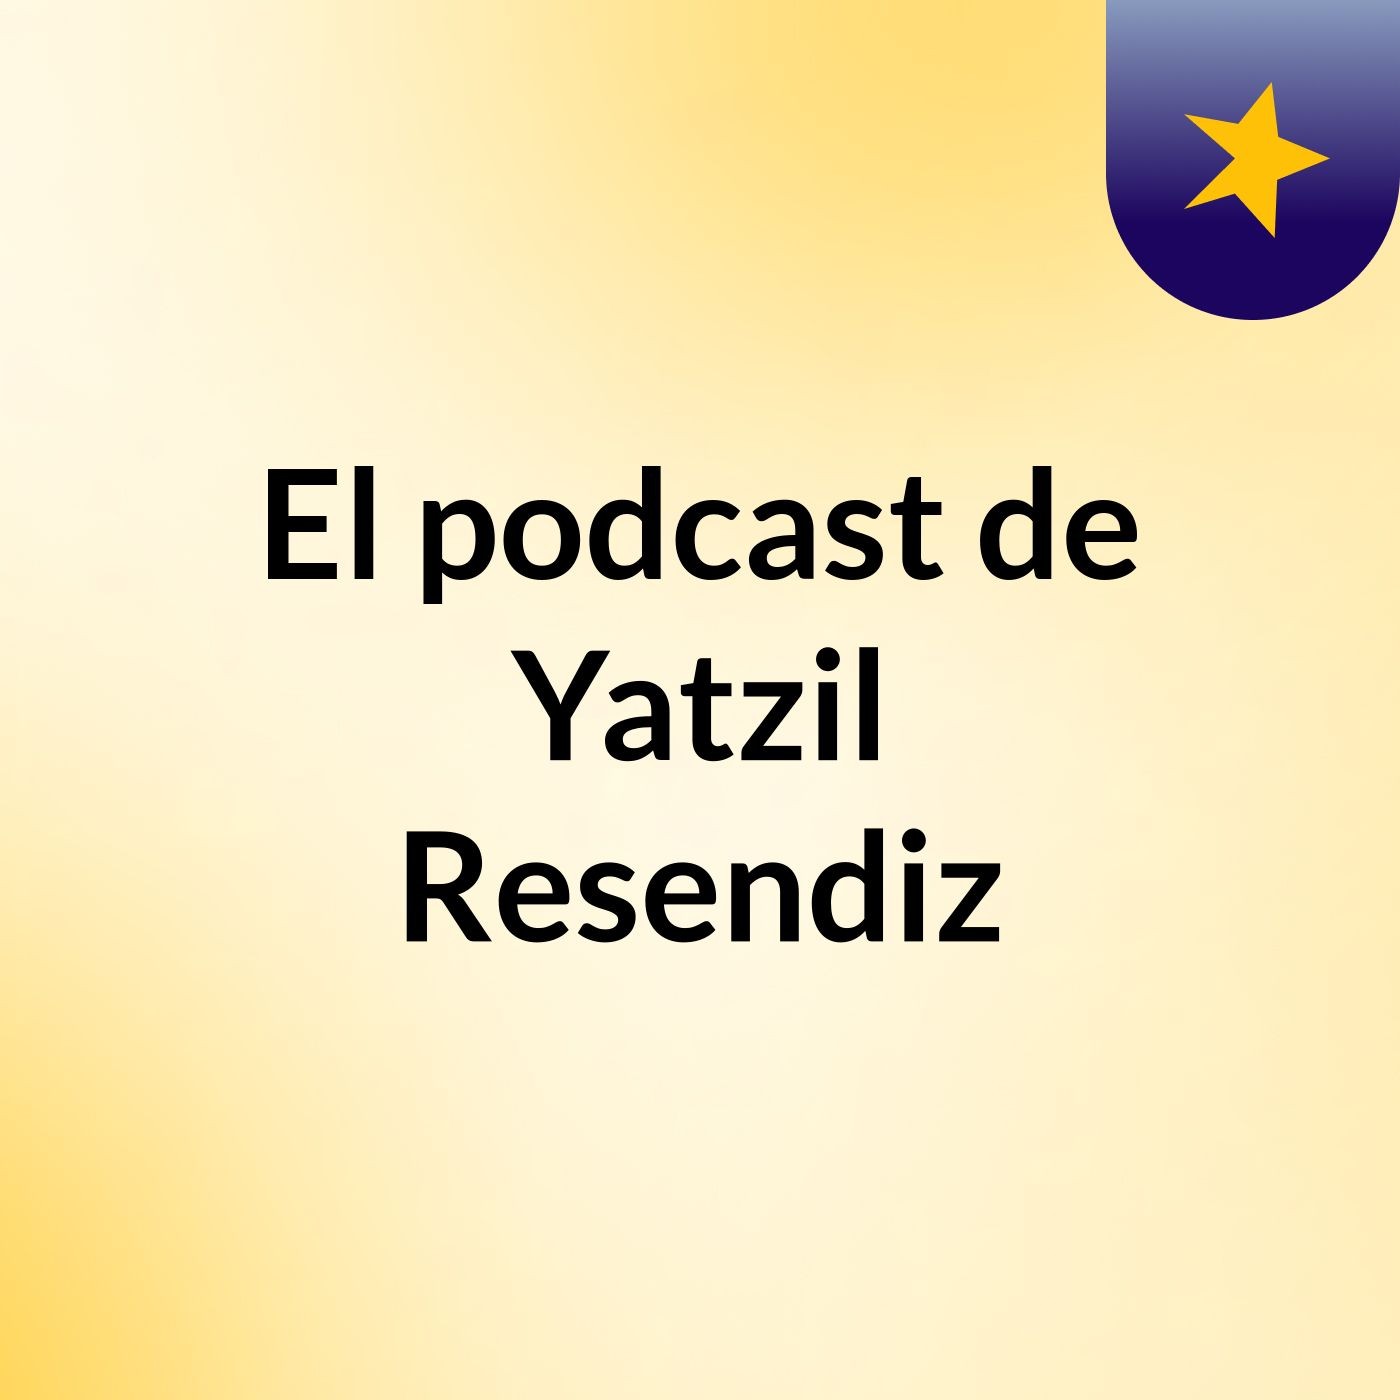 El podcast de Yatzil Resendiz